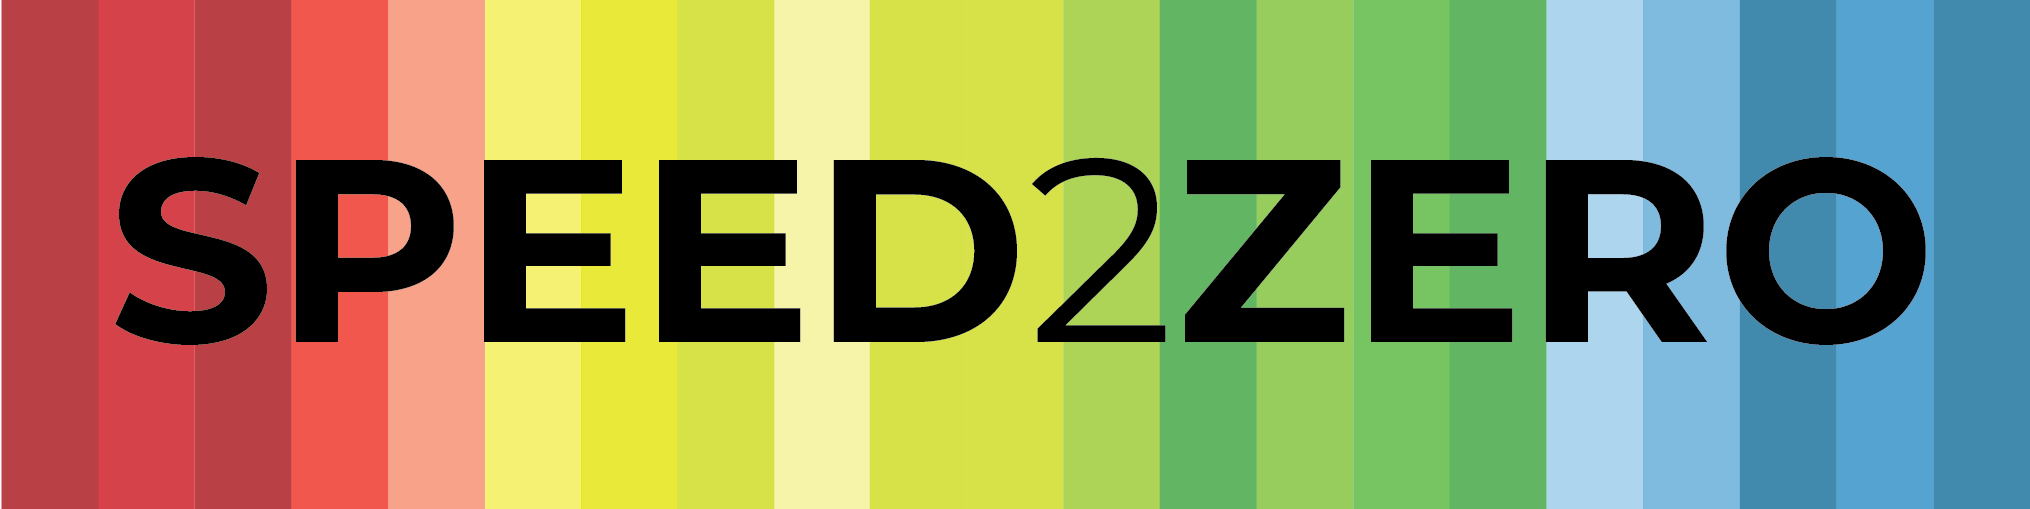 SPEED2ZERO Project